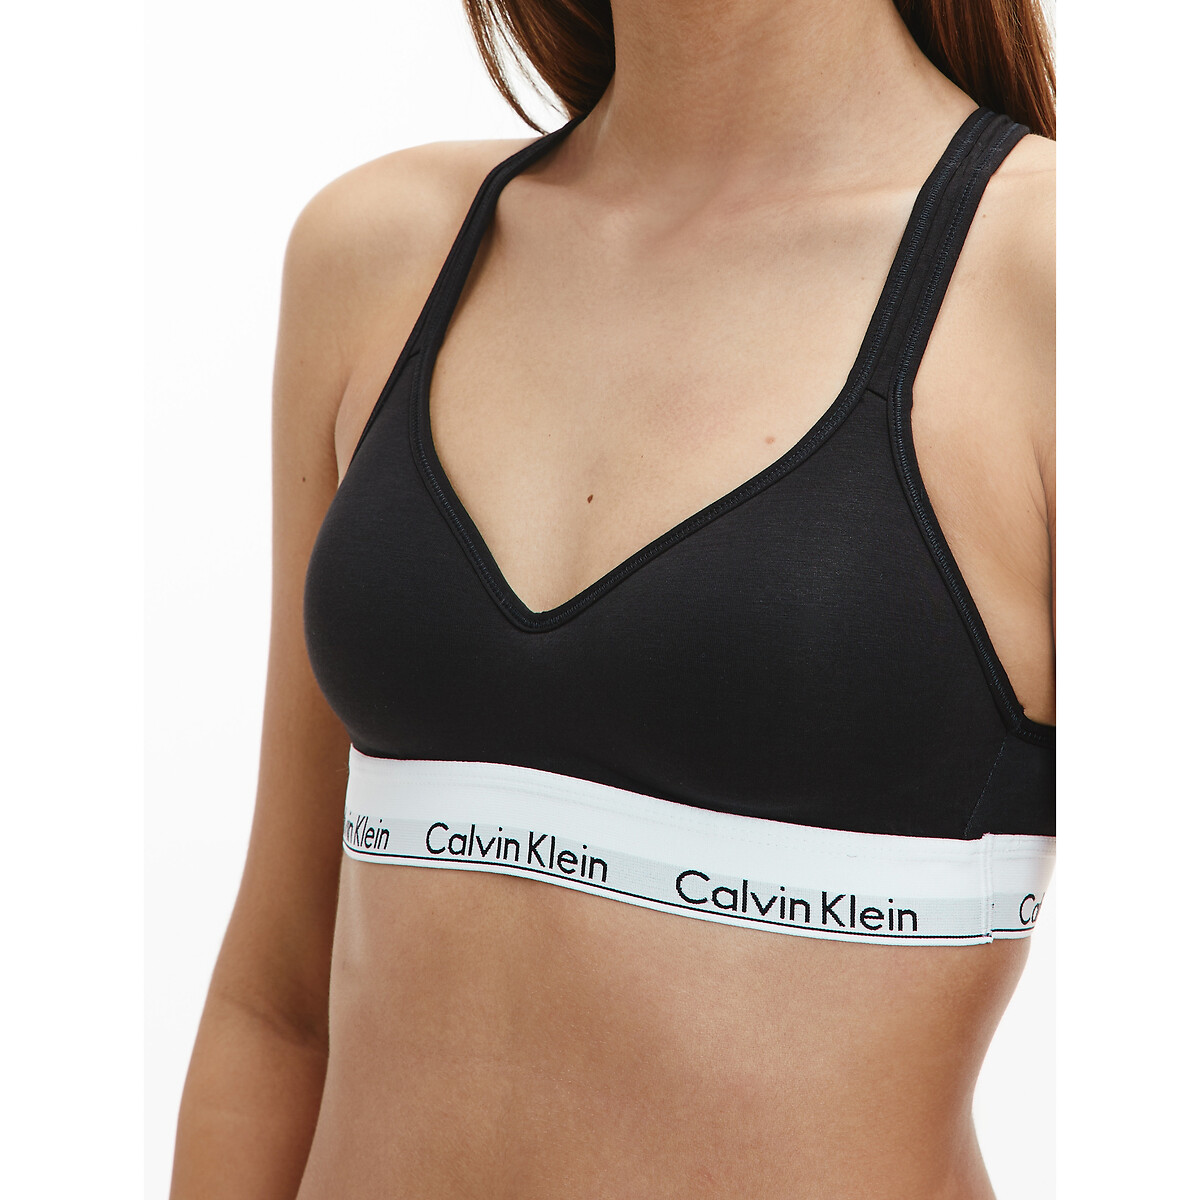 Bustier-bh mit logo-schriftzug Calvin Klein Underwear | La Redoute